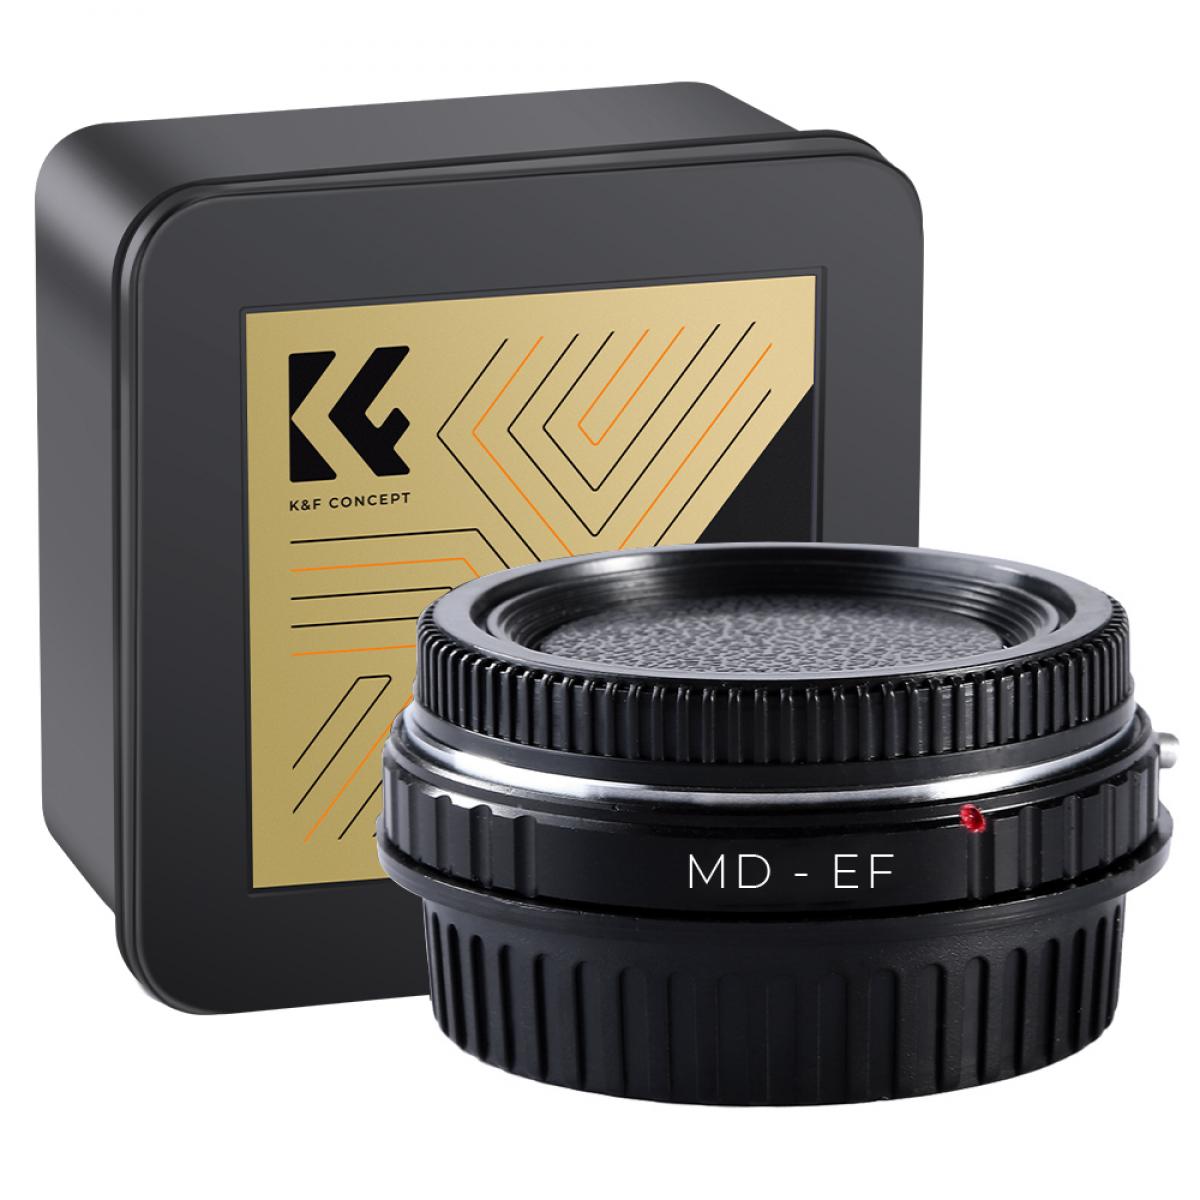 K&F Concept Bague Adaptation Objectif - Objectif Minolta MD MC  vers Appareil Photo à Monture Canon EF (MD-EOS) M12131